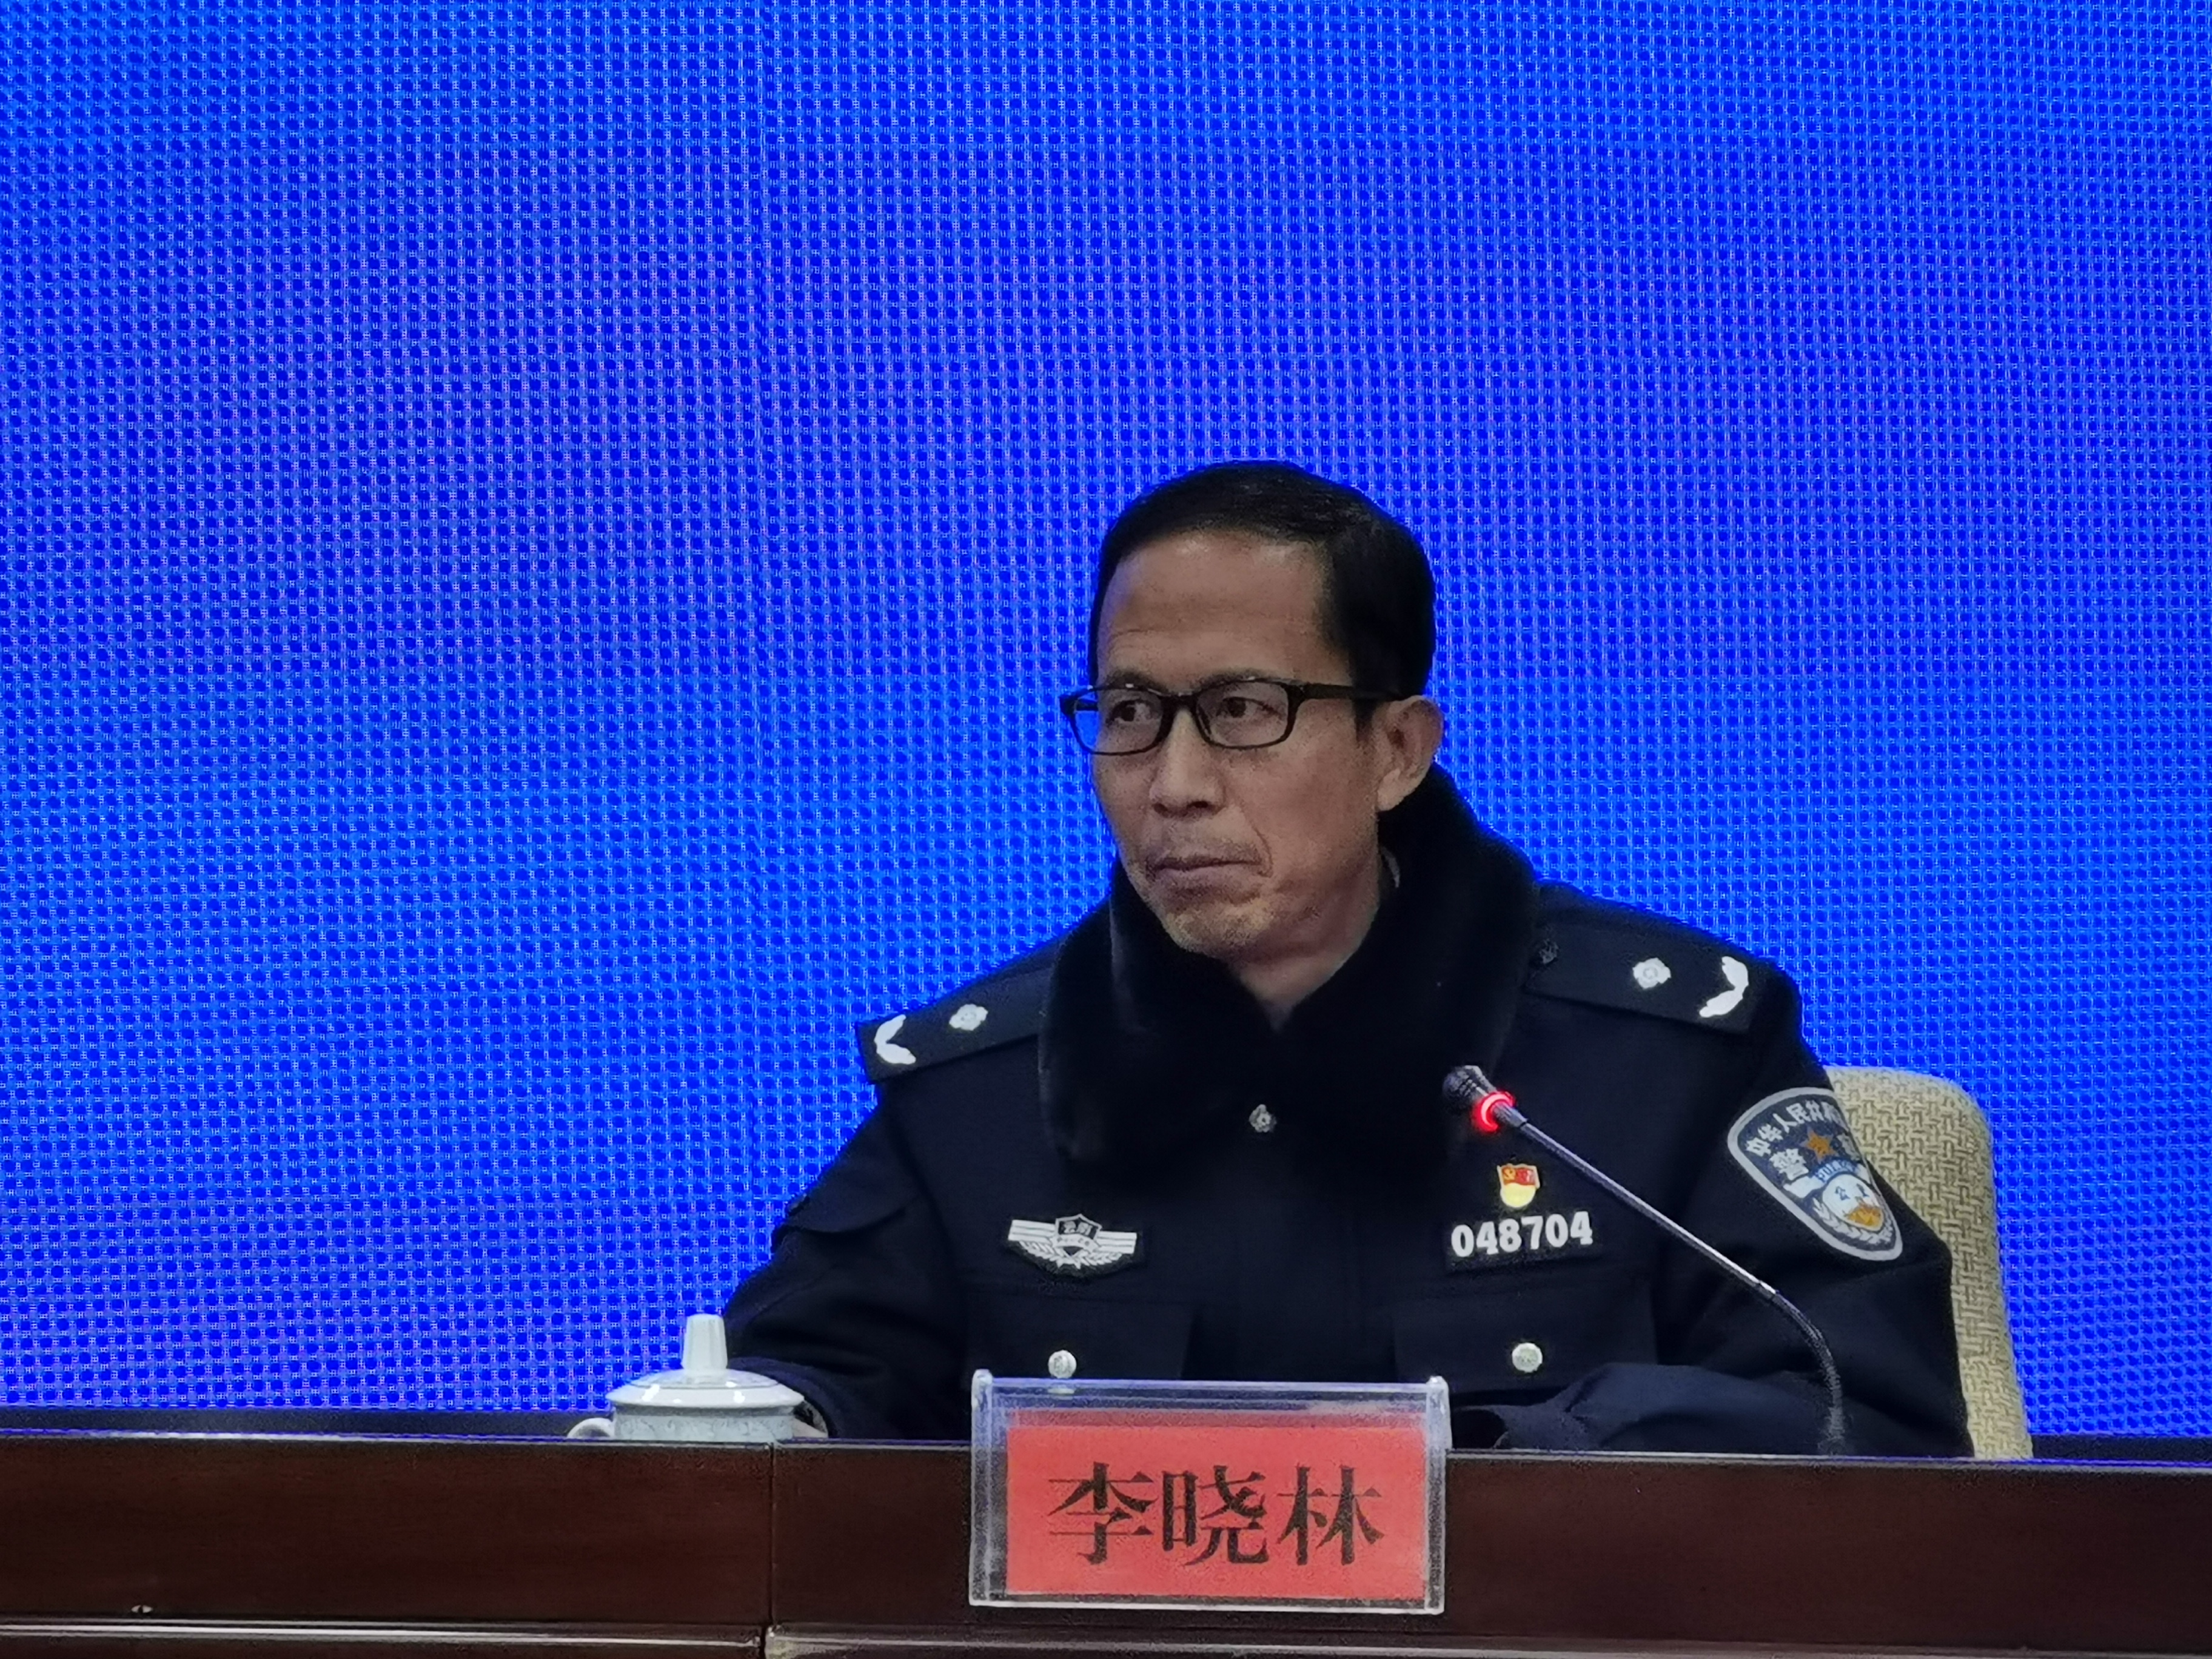 市公安局副局长李晓林回答,1月26日,丽江市公安局向广大公众发布了